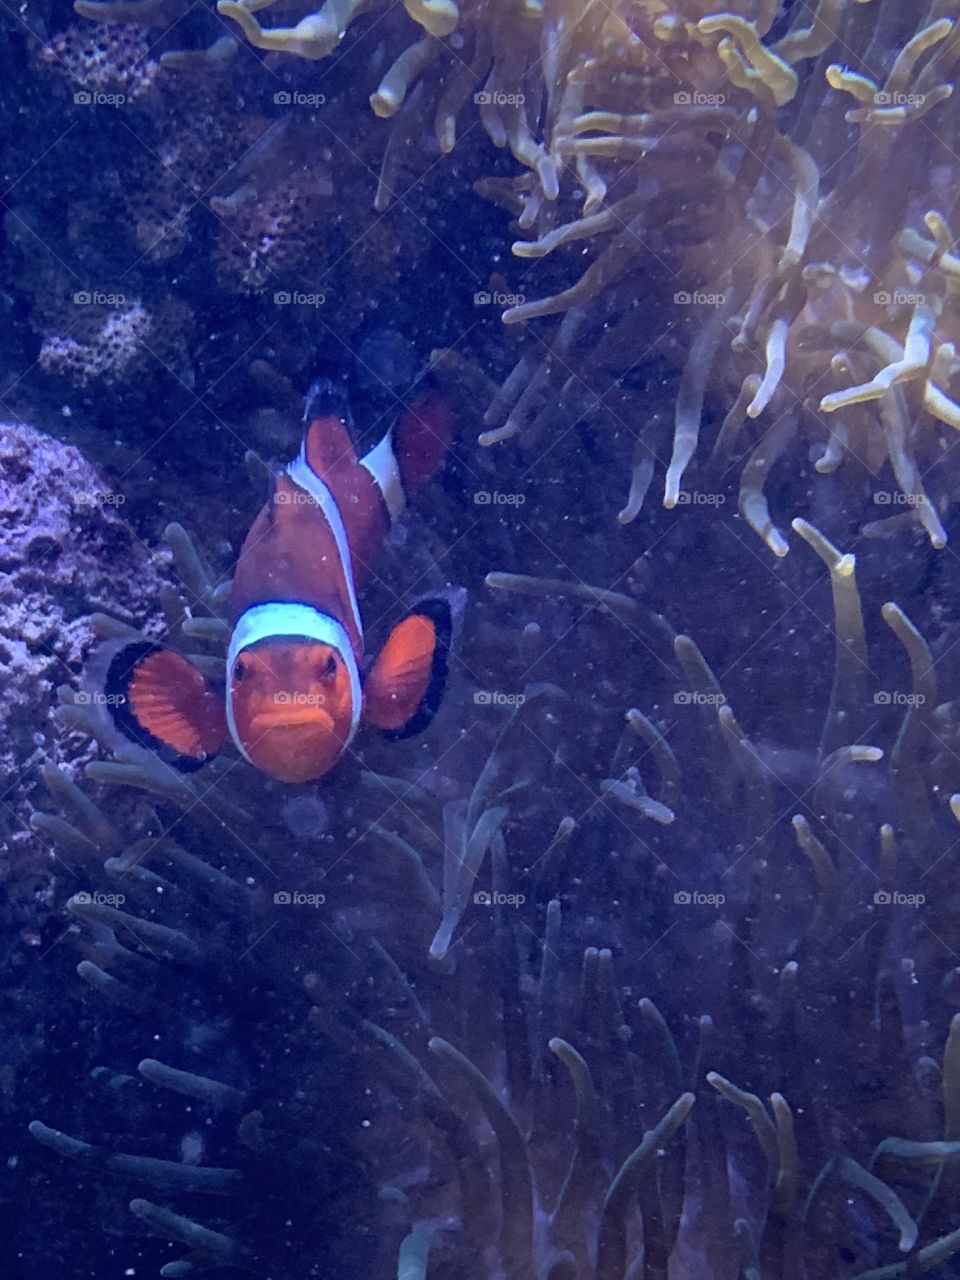 Found Nemo!